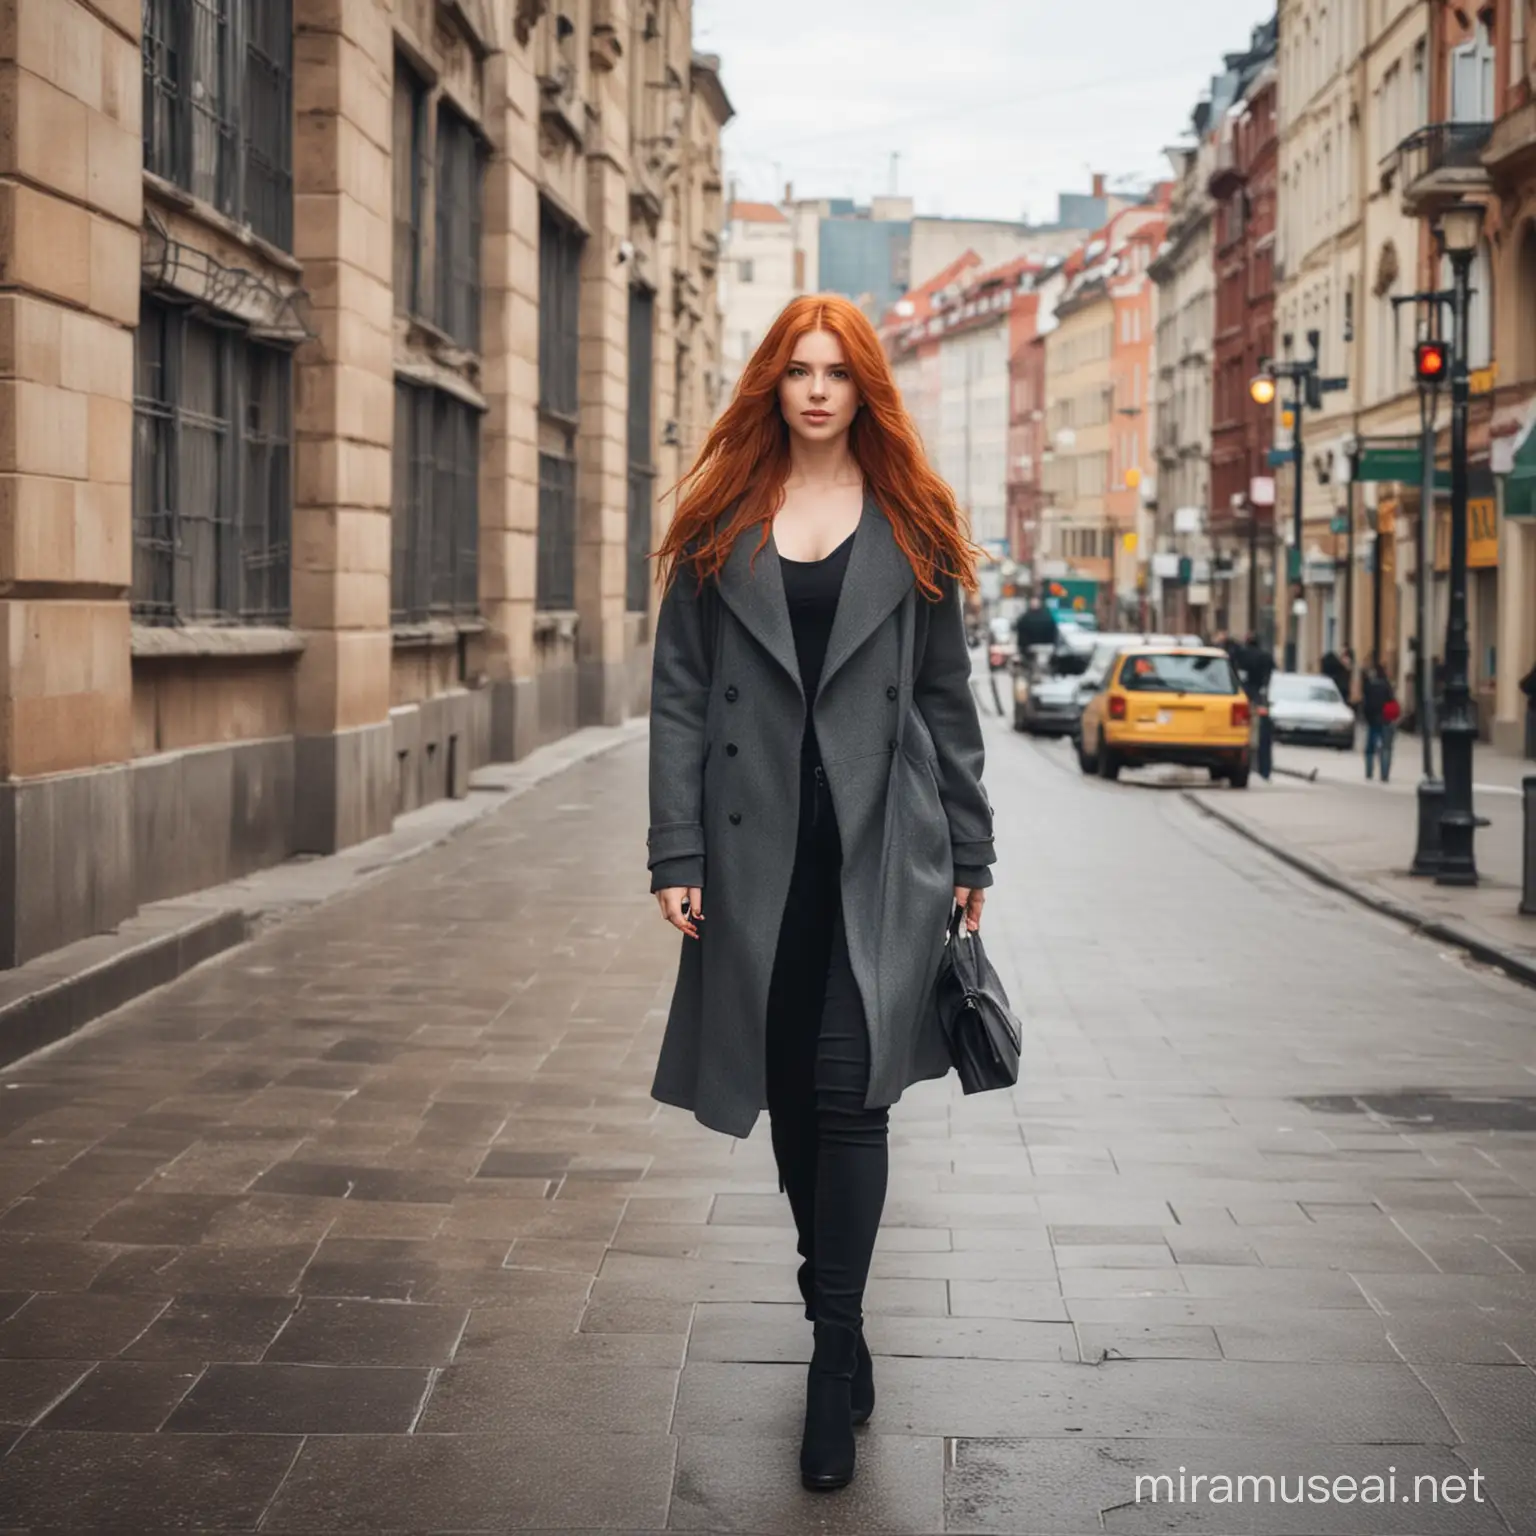 Рыжая девушка гуляет в городе